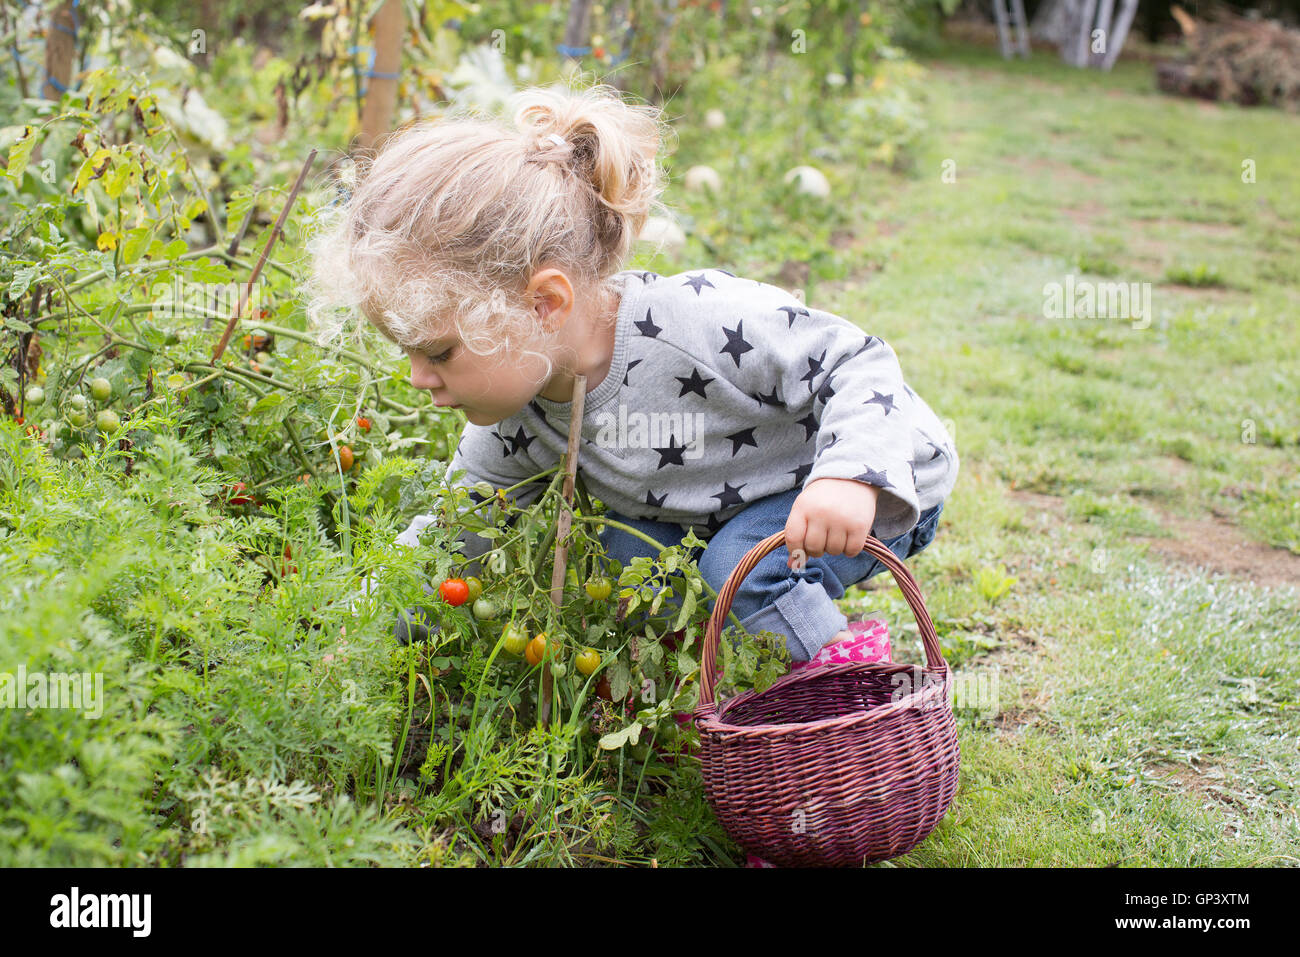 Little girl picking cherry tomatoes from vegetable garden Stock Photo